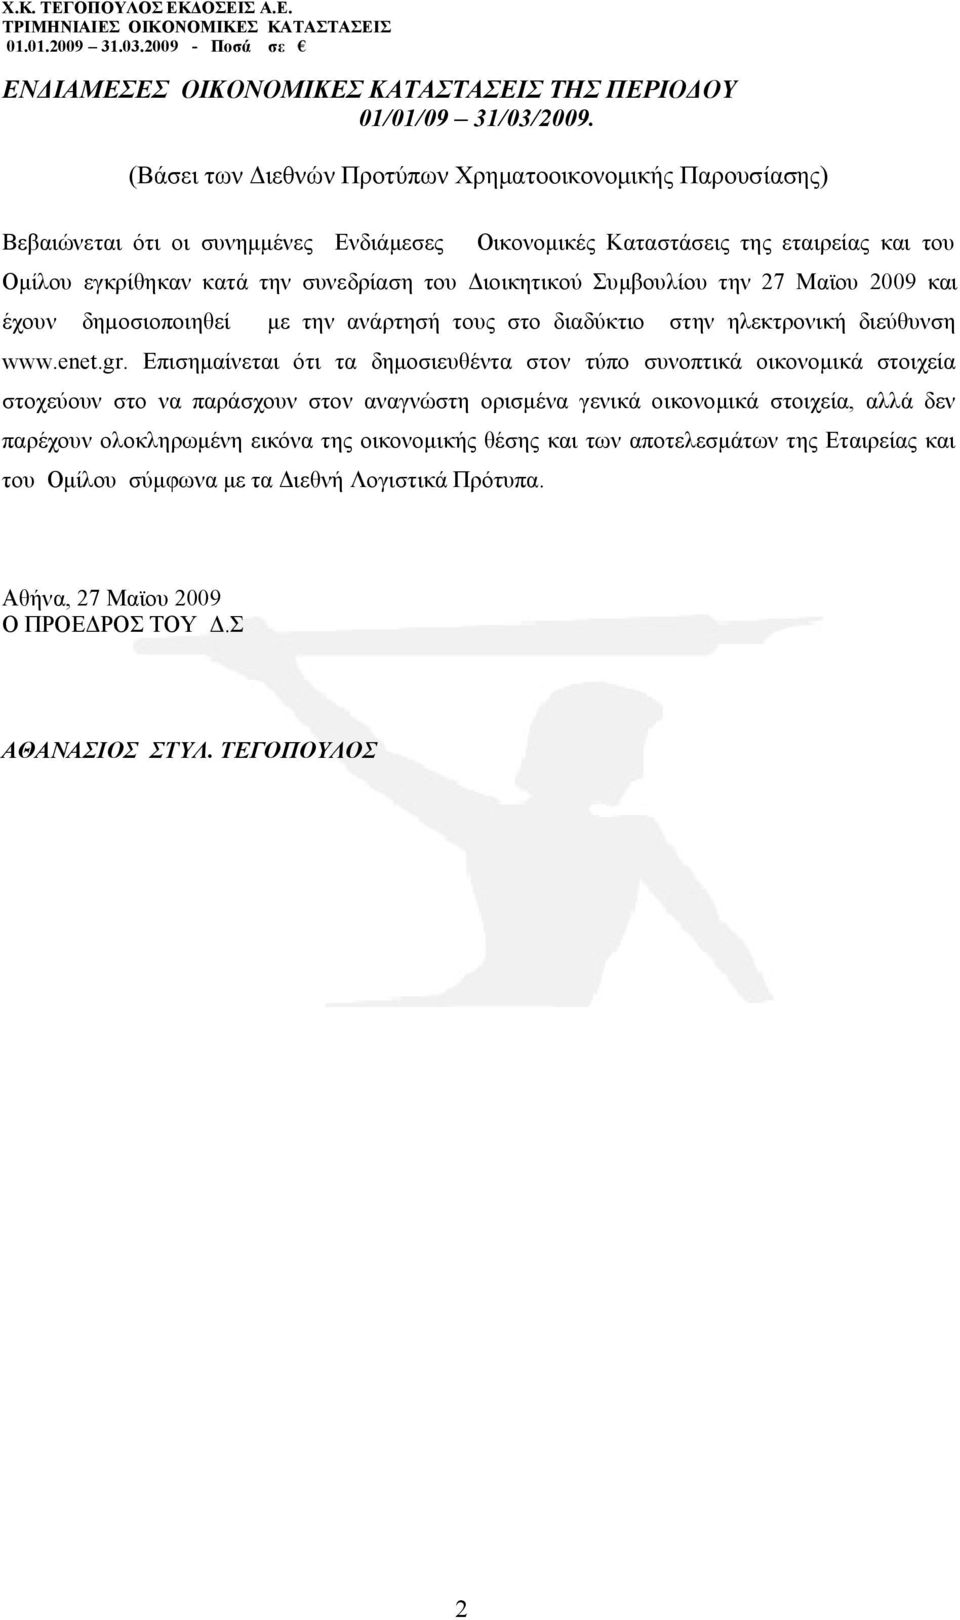 Διοικητικού Συμβουλίου την 27 Μαϊου 2009 και έχουν δηµοσιοποιηθεί με την ανάρτησή τους στο διαδύκτιο στην ηλεκτρονική διεύθυνση www.enet.gr.